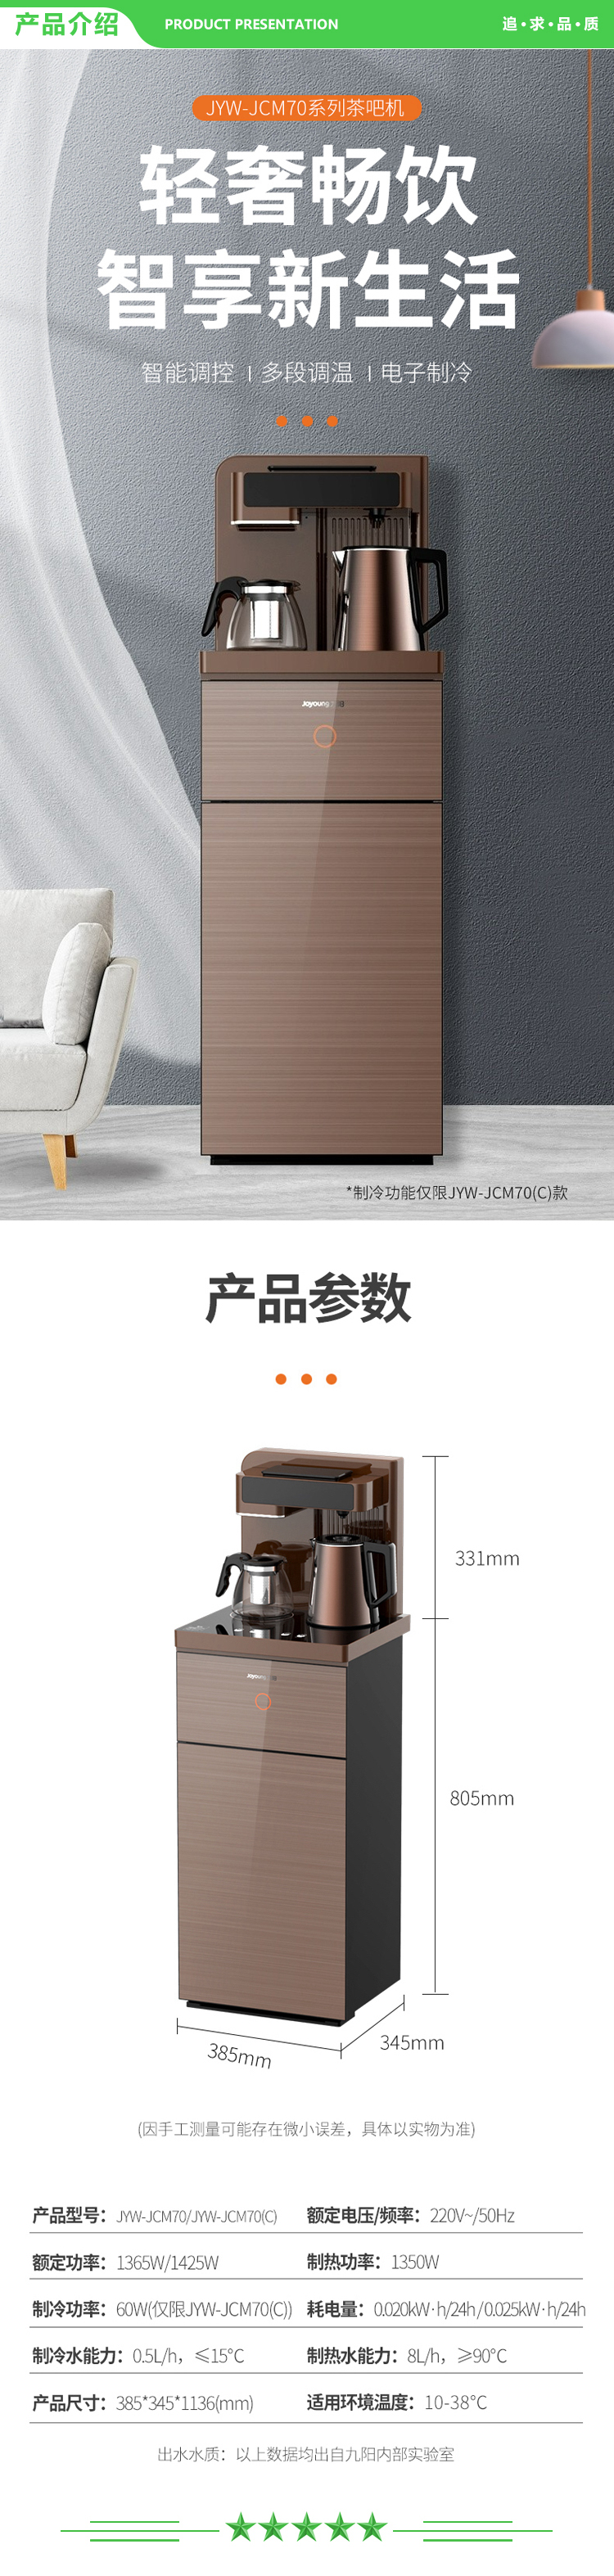 九阳 Joyoung JYW-JCM70 茶吧机 多功能智能遥控温热款台式立式饮水机下置式水桶全自动饮水机 温热款.jpg